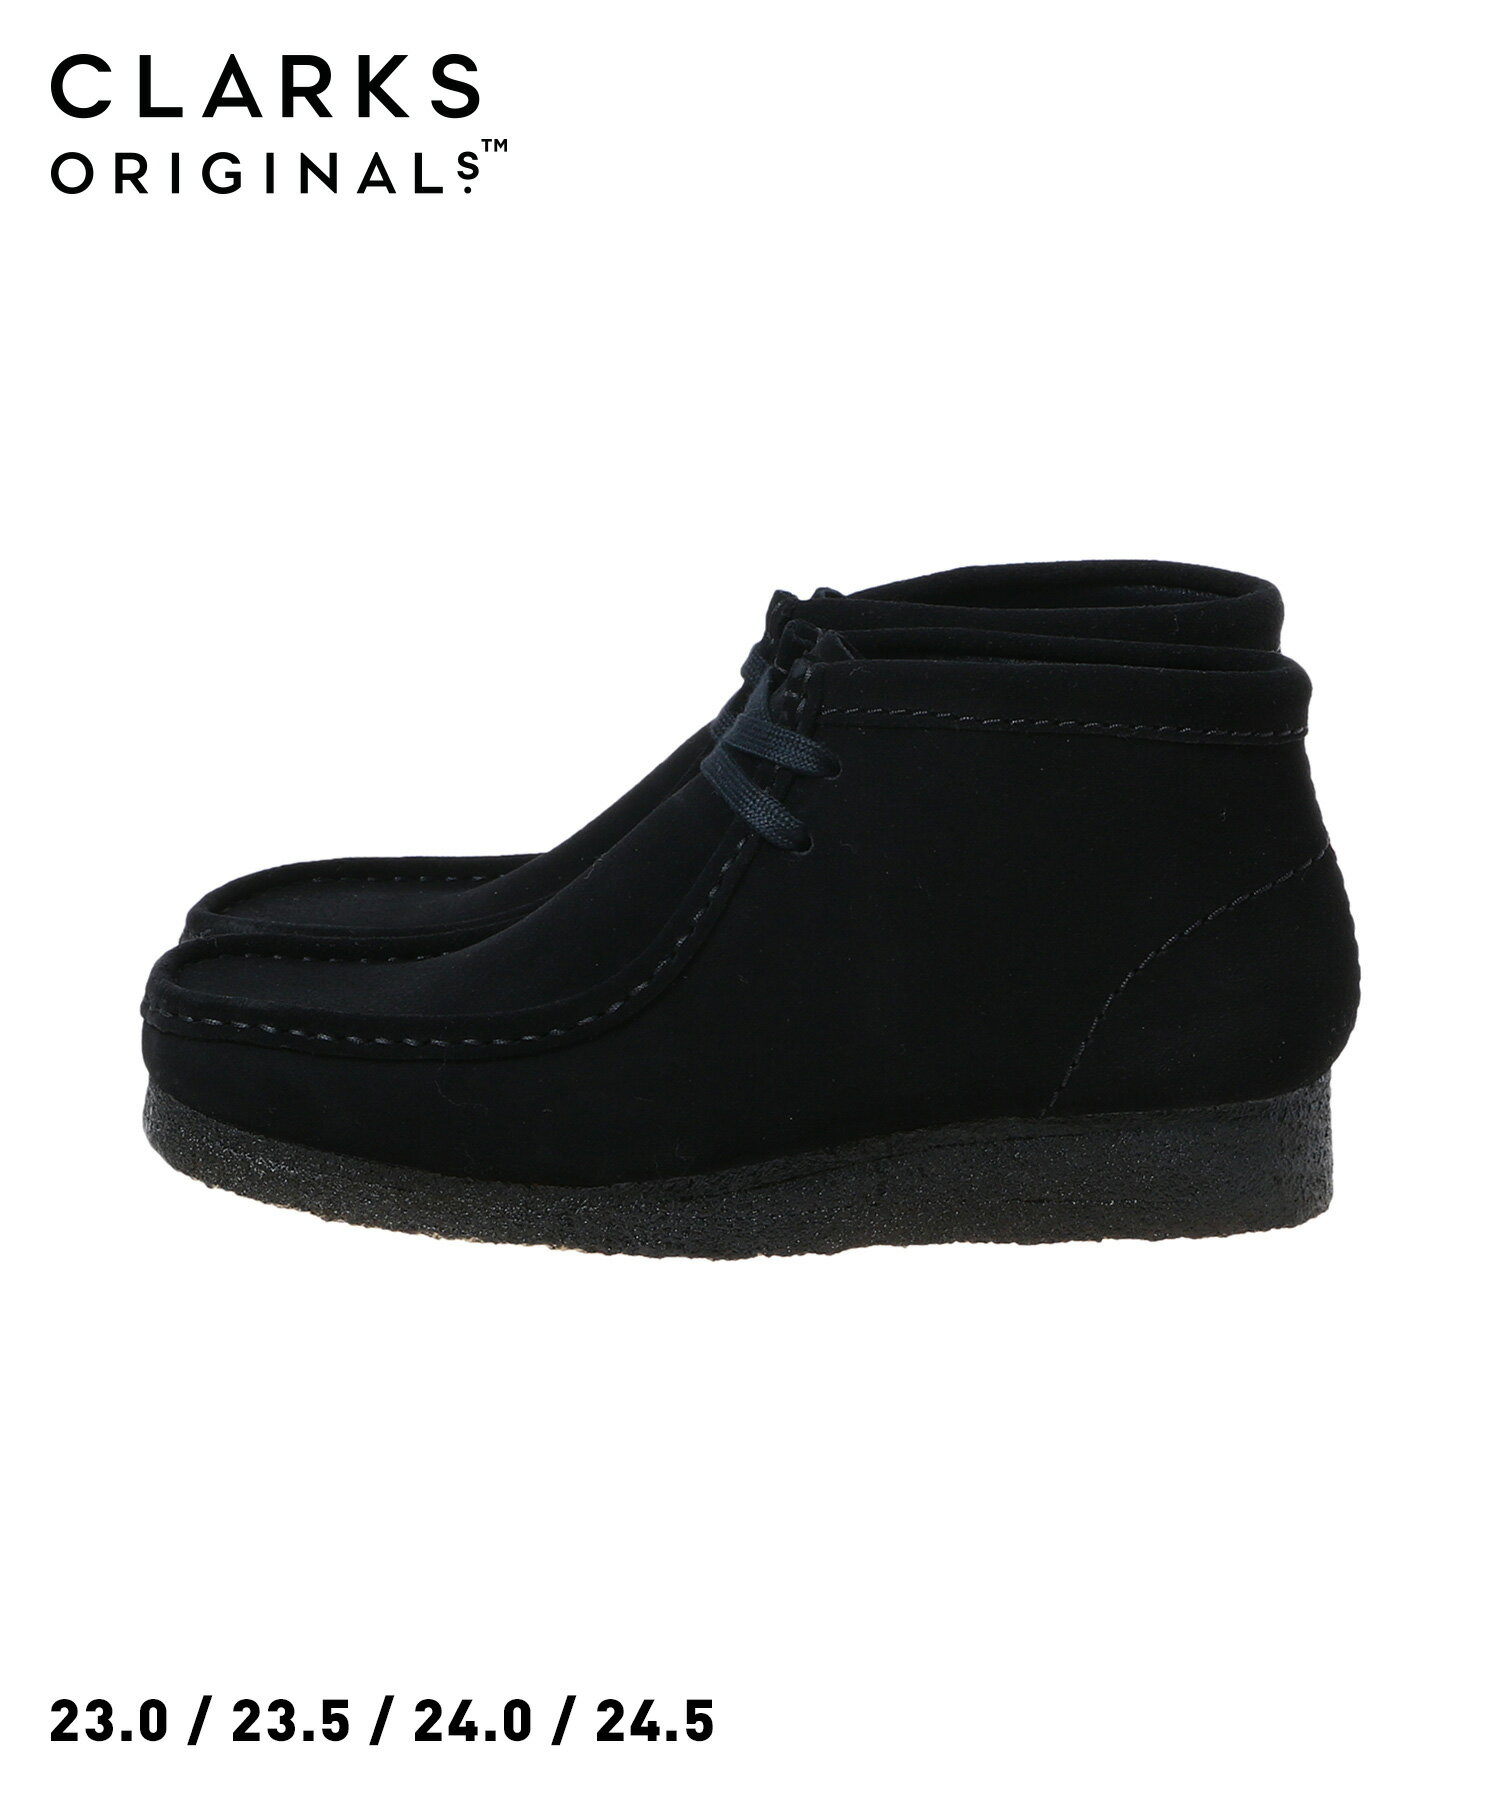 クラークス Clarks Wallabee Boot. Black Suede(26155521)【クラークス ワラビーブーツ ブラックスエード】国内正規品 レディース フットウェア 靴 正規品 シンプル 定番アイテム ストリート カジュアル 合わせやすい ギフト対応可